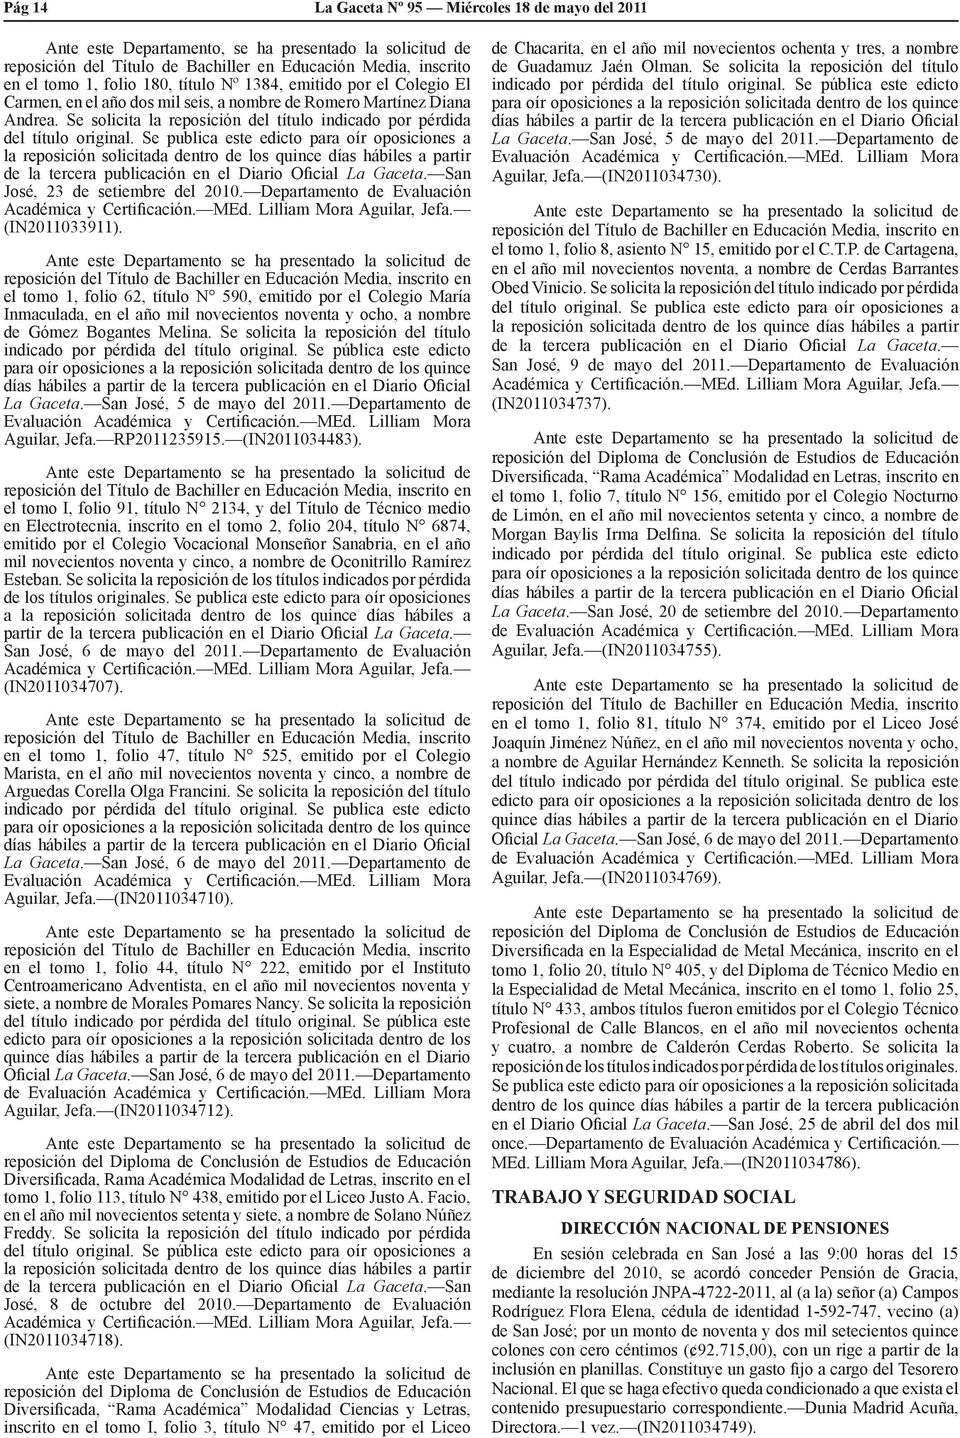 Se publica este edicto para oír oposiciones a la reposición solicitada dentro de los quince días hábiles a partir de la tercera publicación en el Diario Oficial La Gaceta.